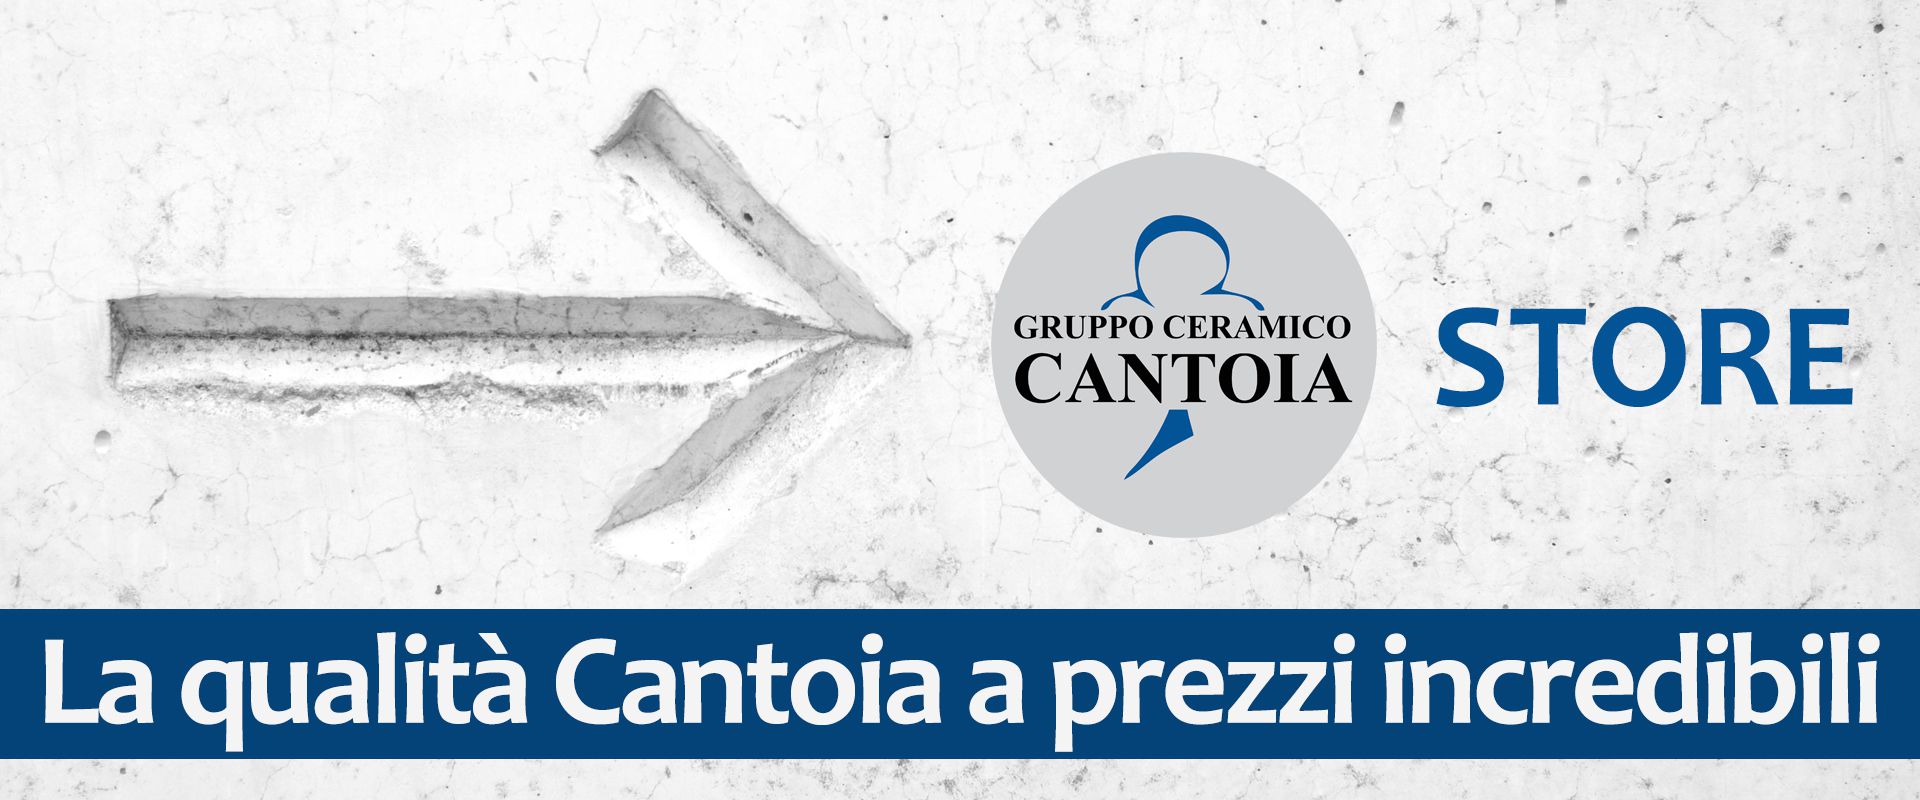 Gruppo Ceramico Cantoia, Novara - SCOPRI I PRODOTTI IN PROMOZIONE